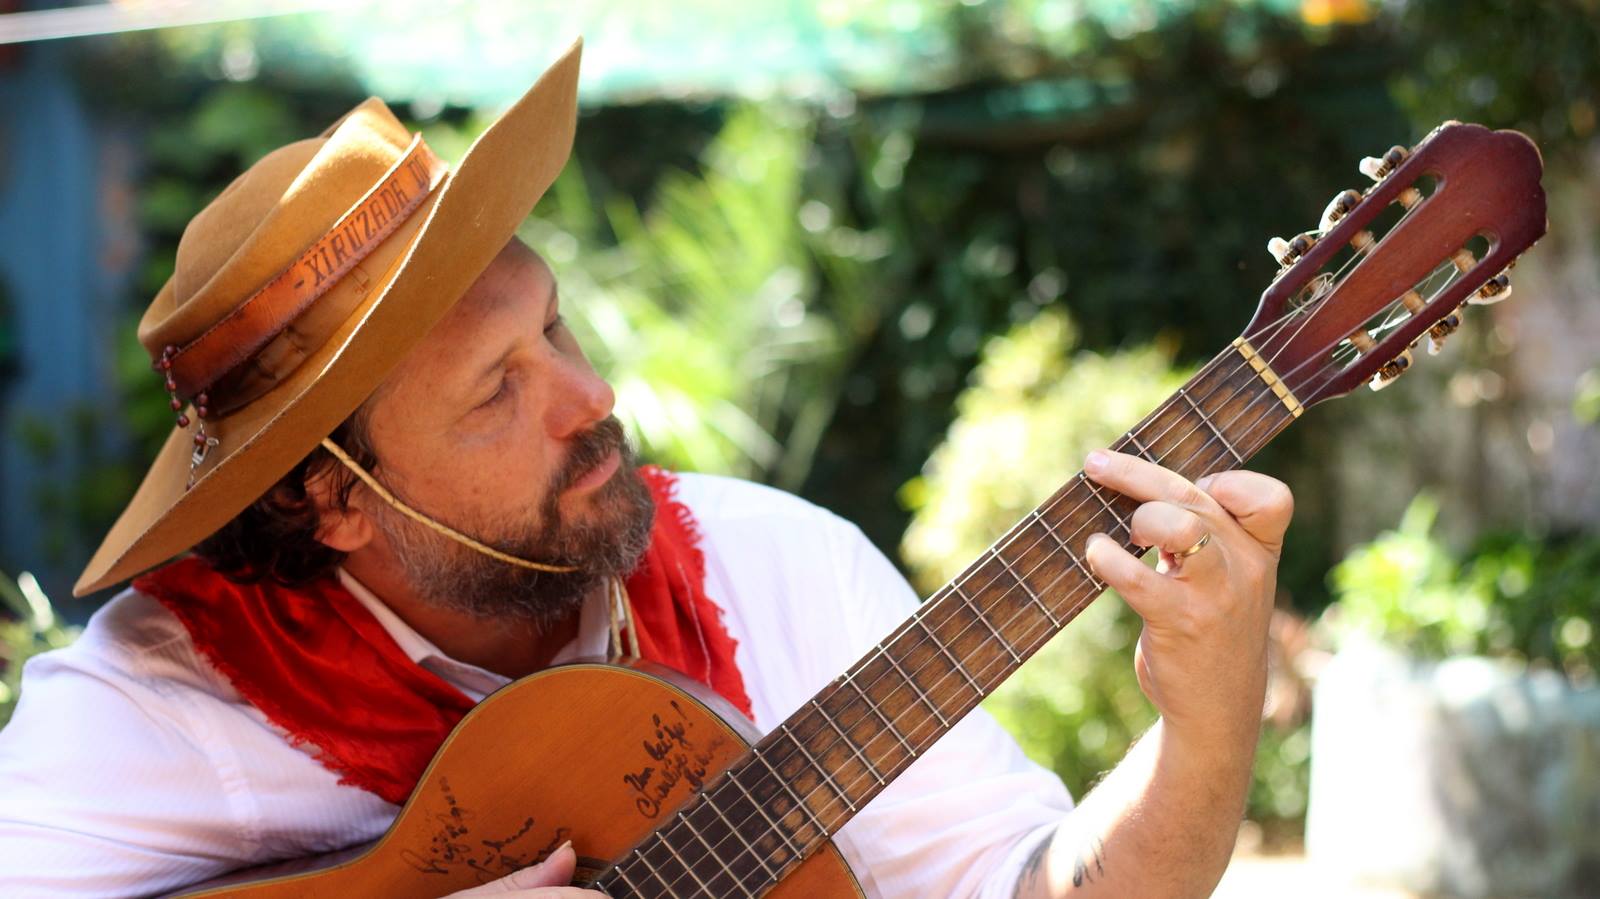 Músico tradicionalista de Cachoeirinha lança clipe com composição em homenagem aos pais